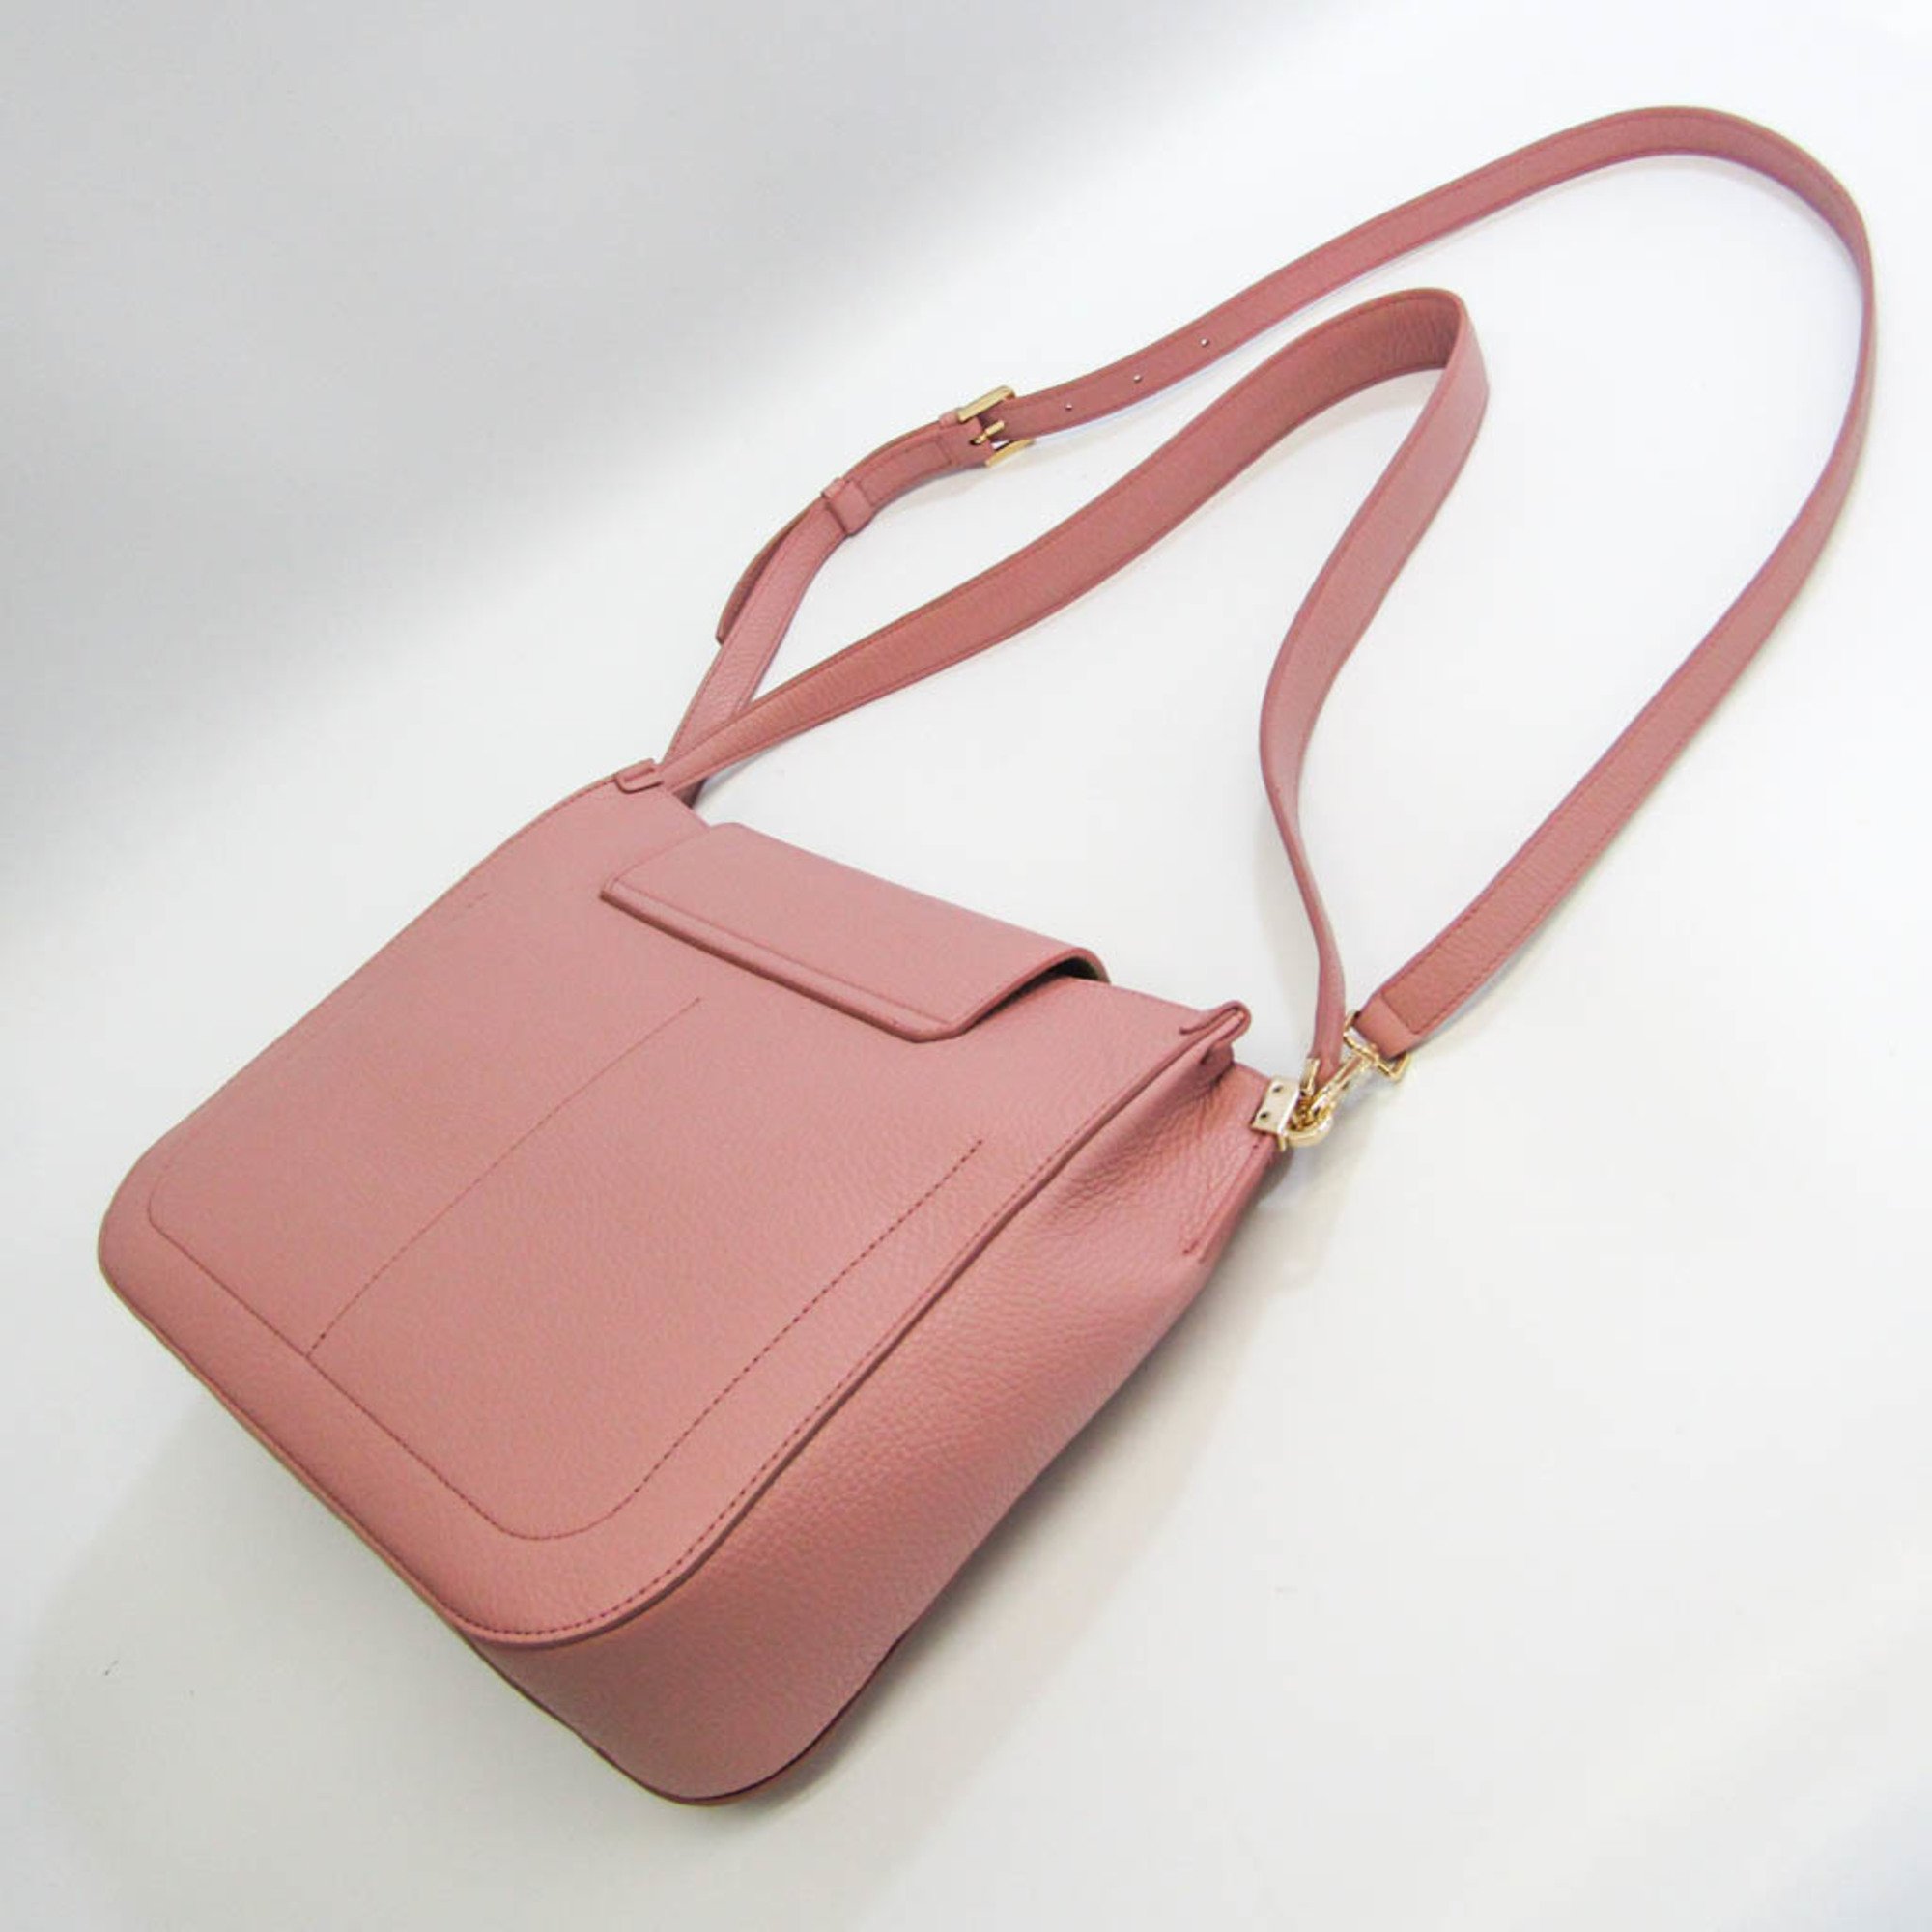 Furla SLEEK M HOBO BZT4 ABR Women's Leather Shoulder Bag Pink